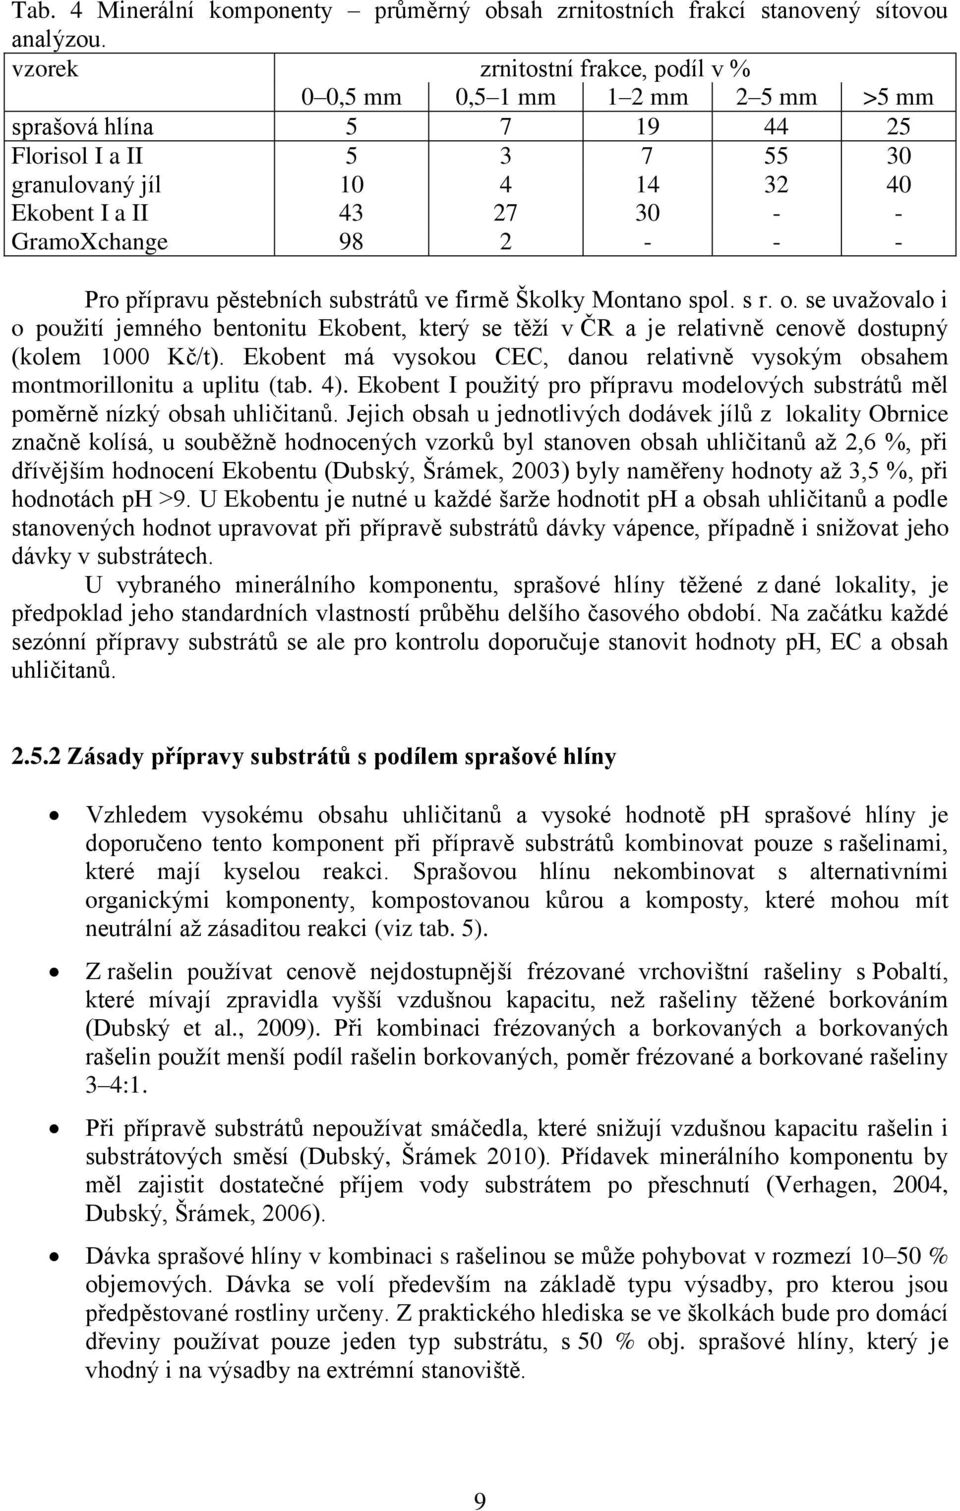 GramoXchange 98 2 - - - Pro přípravu pěstebních substrátů ve firmě Školky Montano spol. s r. o.